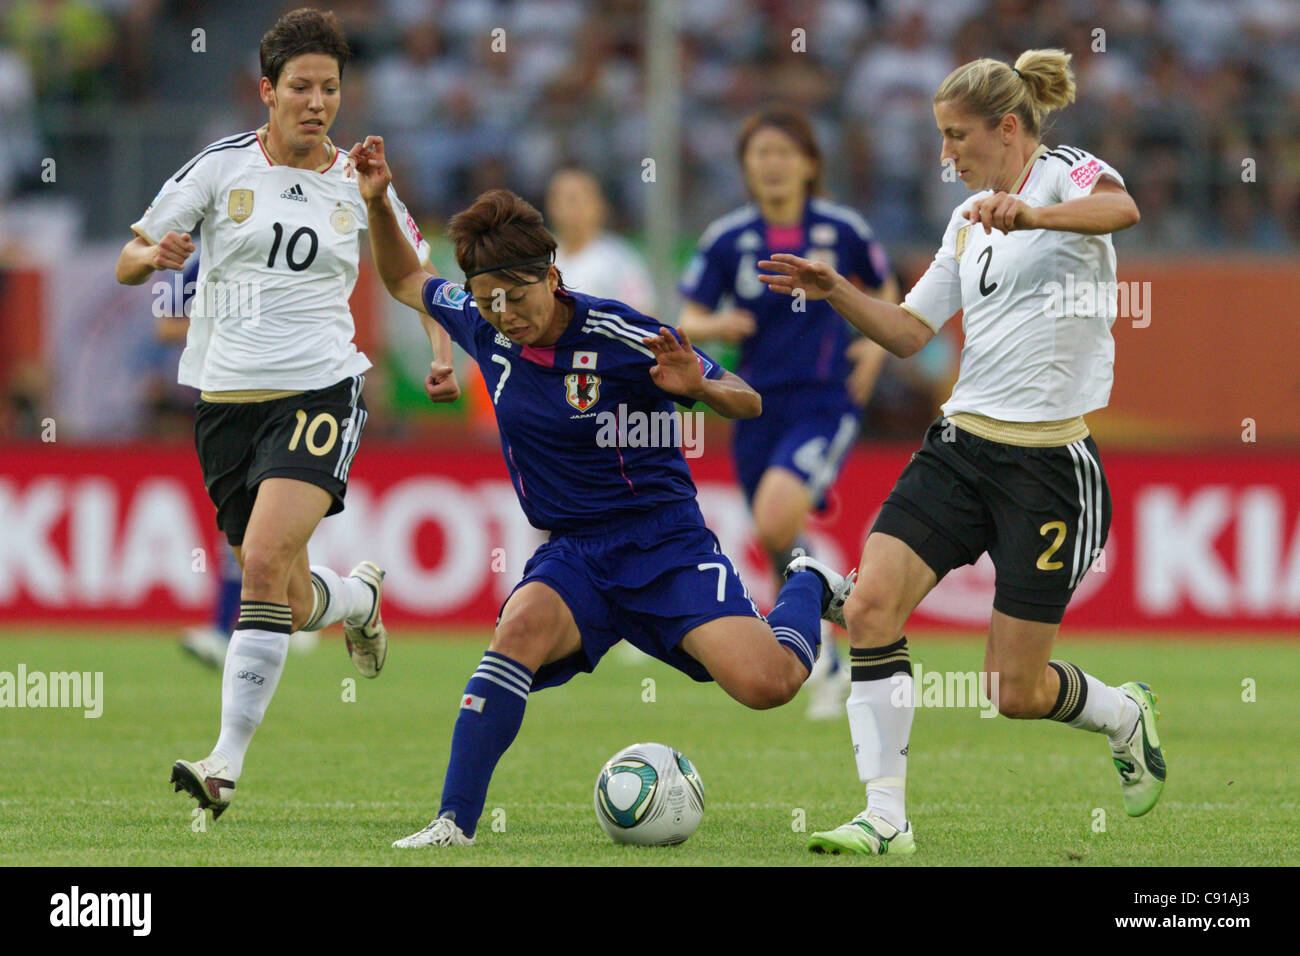 Kozue Ando du Japon (C) se bat pour la balle contre Linda Bresonik (L) et Bianca Schmidt de l'Allemagne lors d'un match de Coupe du monde. Banque D'Images